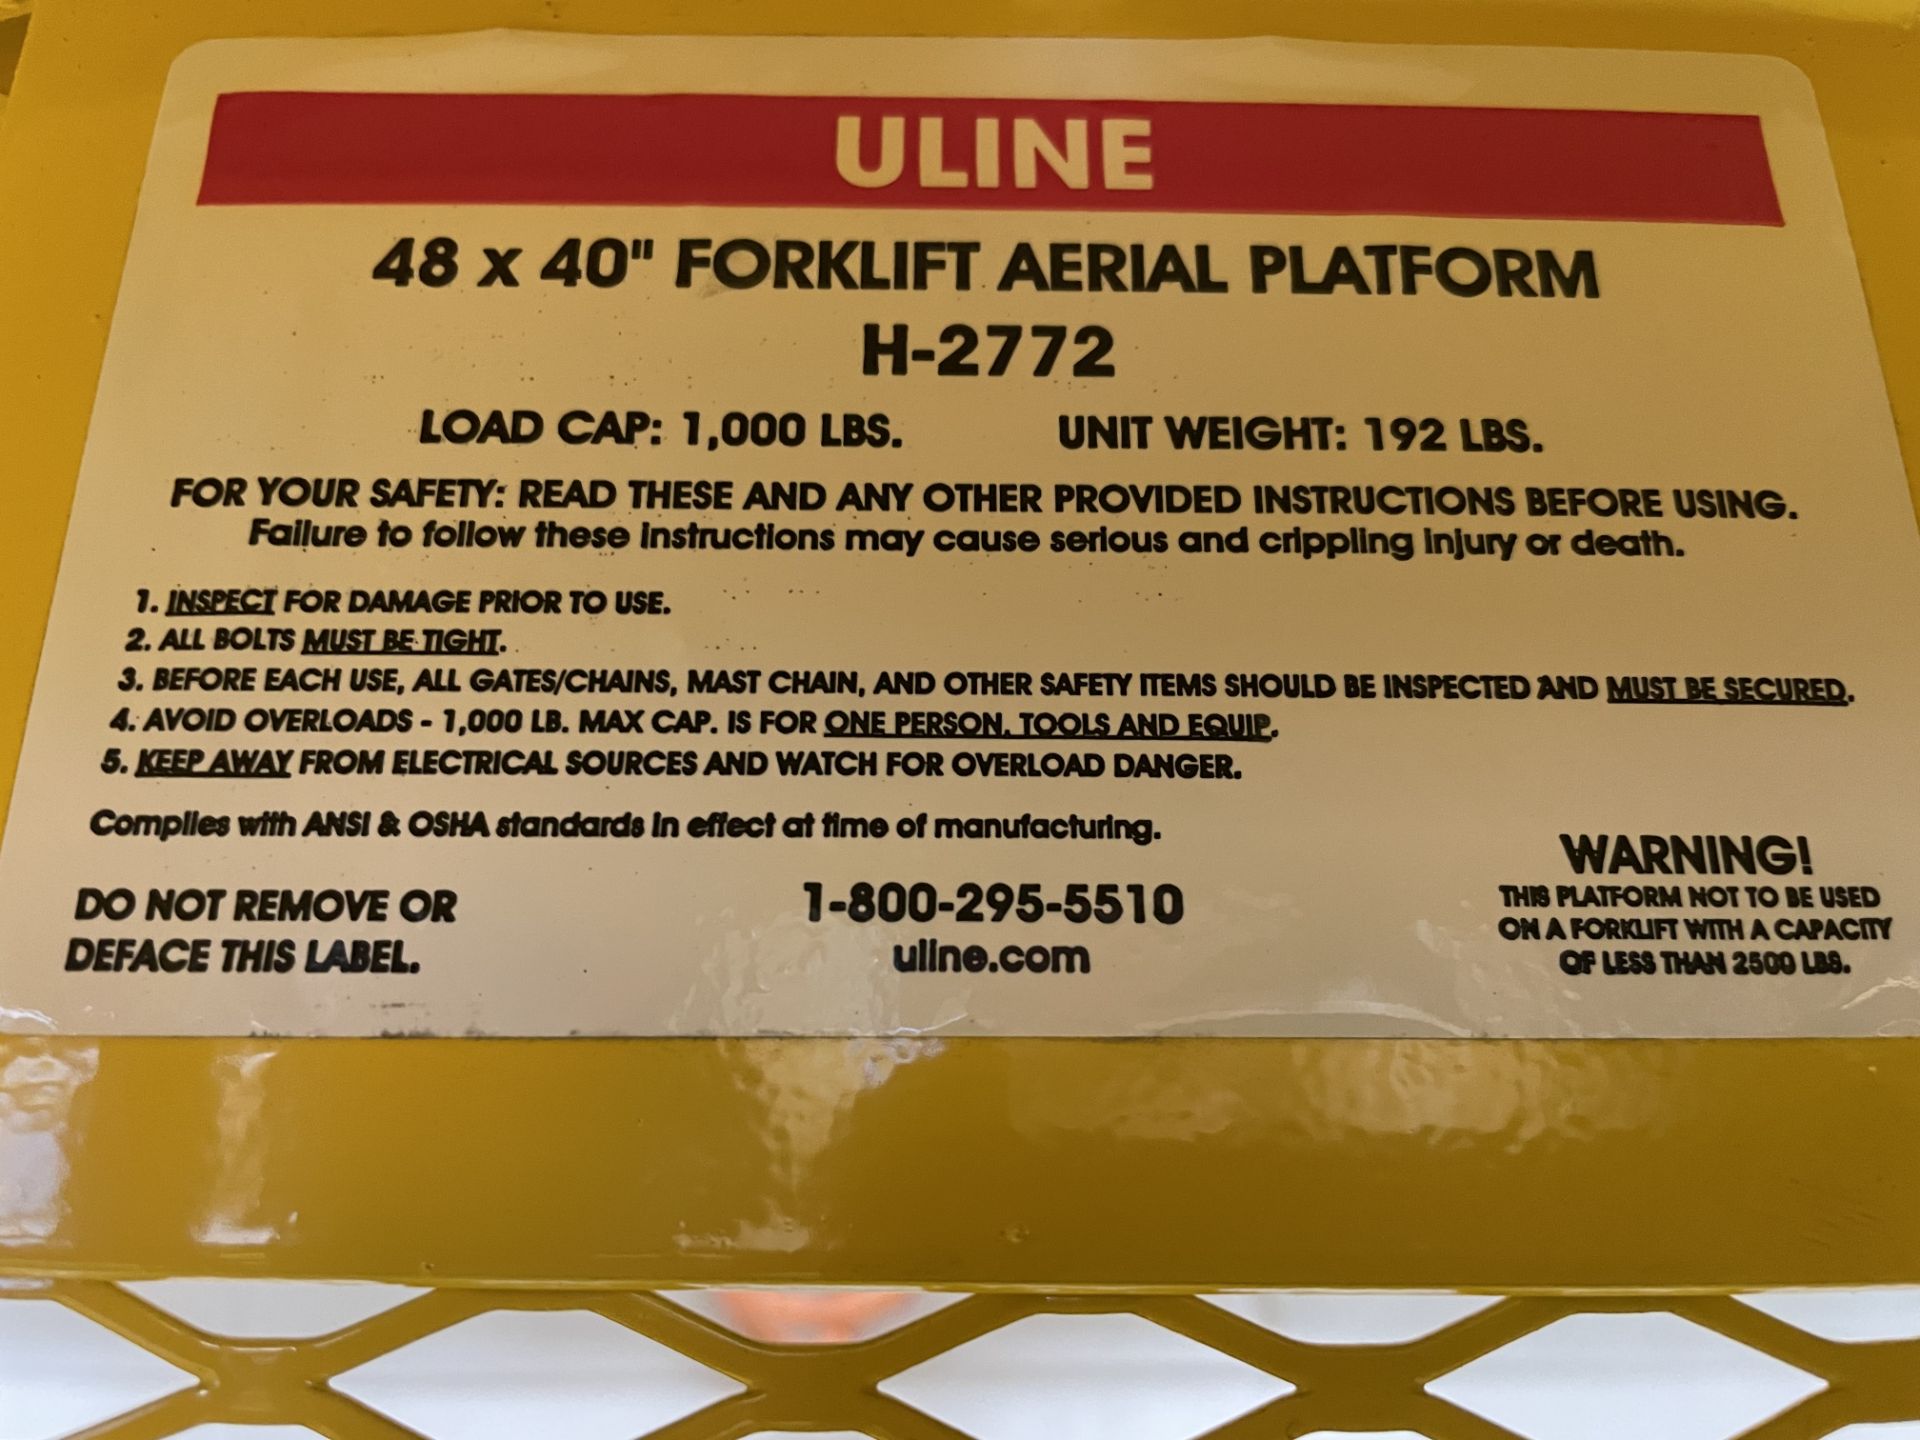 U-Line Model H-2772 Forklift Aerial Platform (Safety Cage), 48" x 40", 1,000 Lb. Capacity - Image 3 of 3